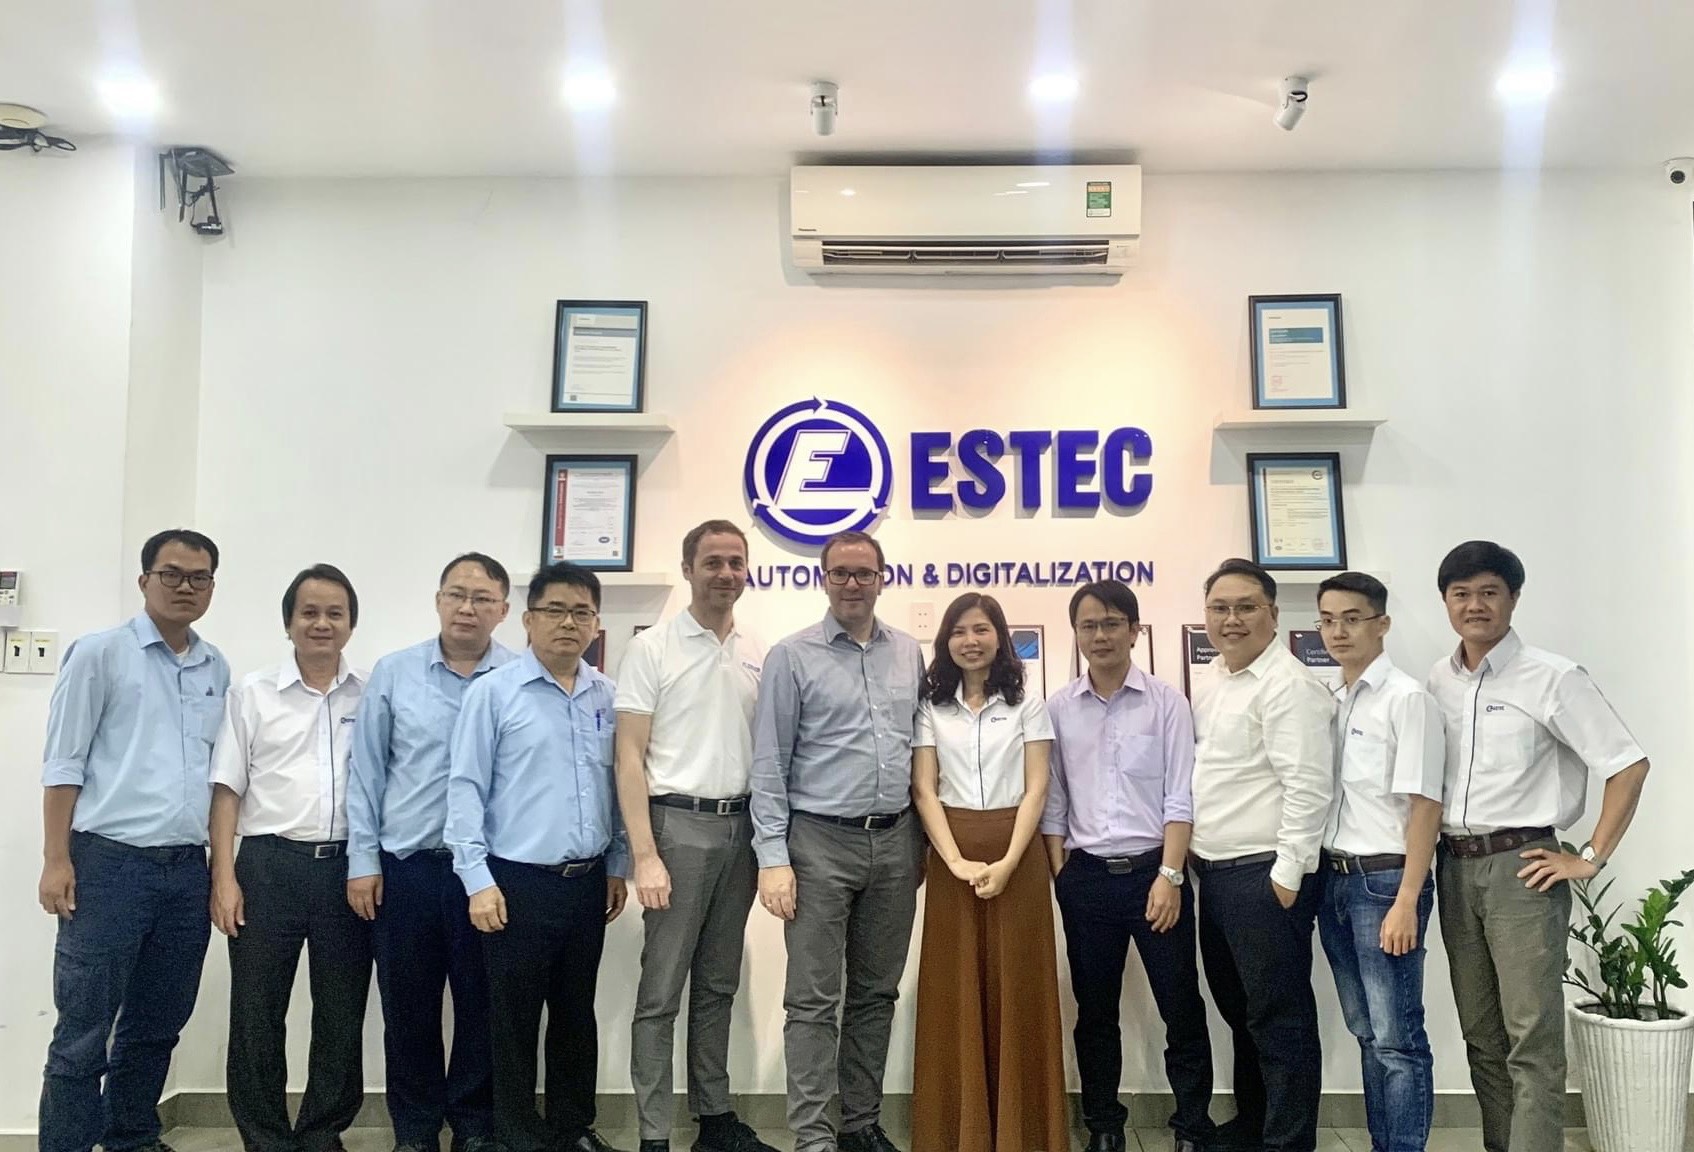 ESTEC - Nhà cung cấp giải pháp hàng đầu trong lĩnh vực Tự Động Hóa và Số hóa tại Việt Nam.